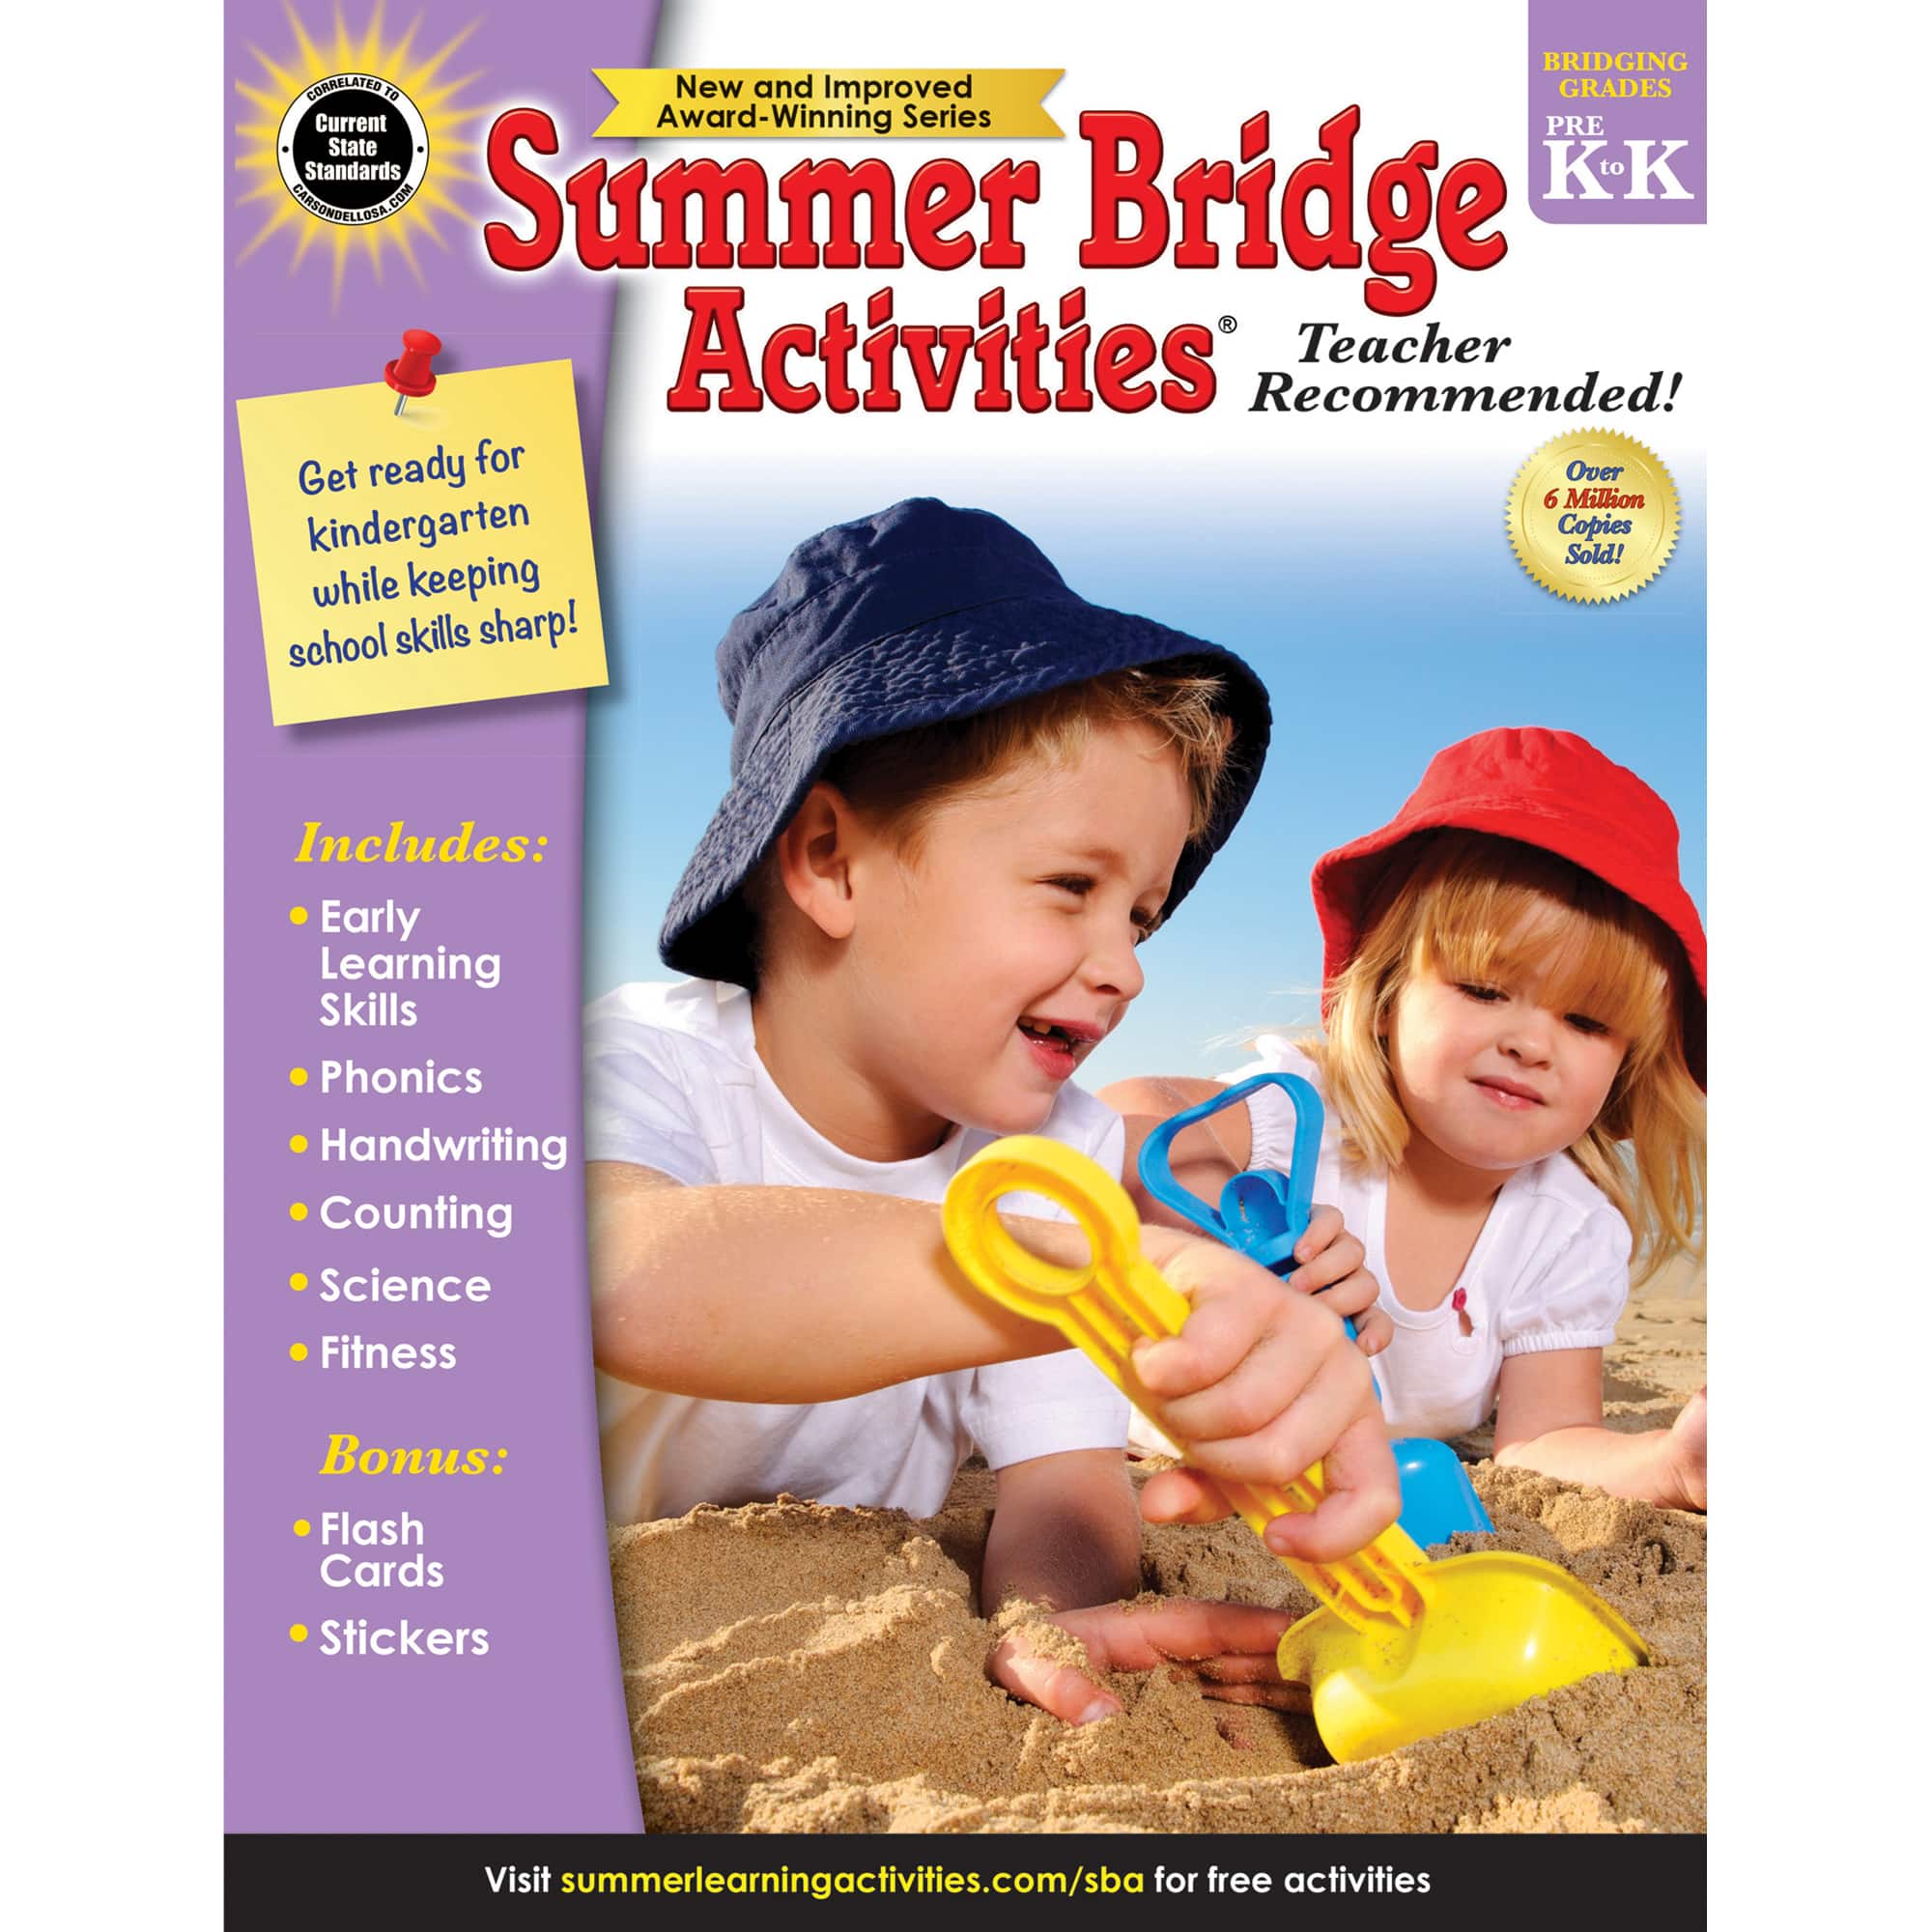 Summer Bridge Activities® Workbook, Grades PreK-K